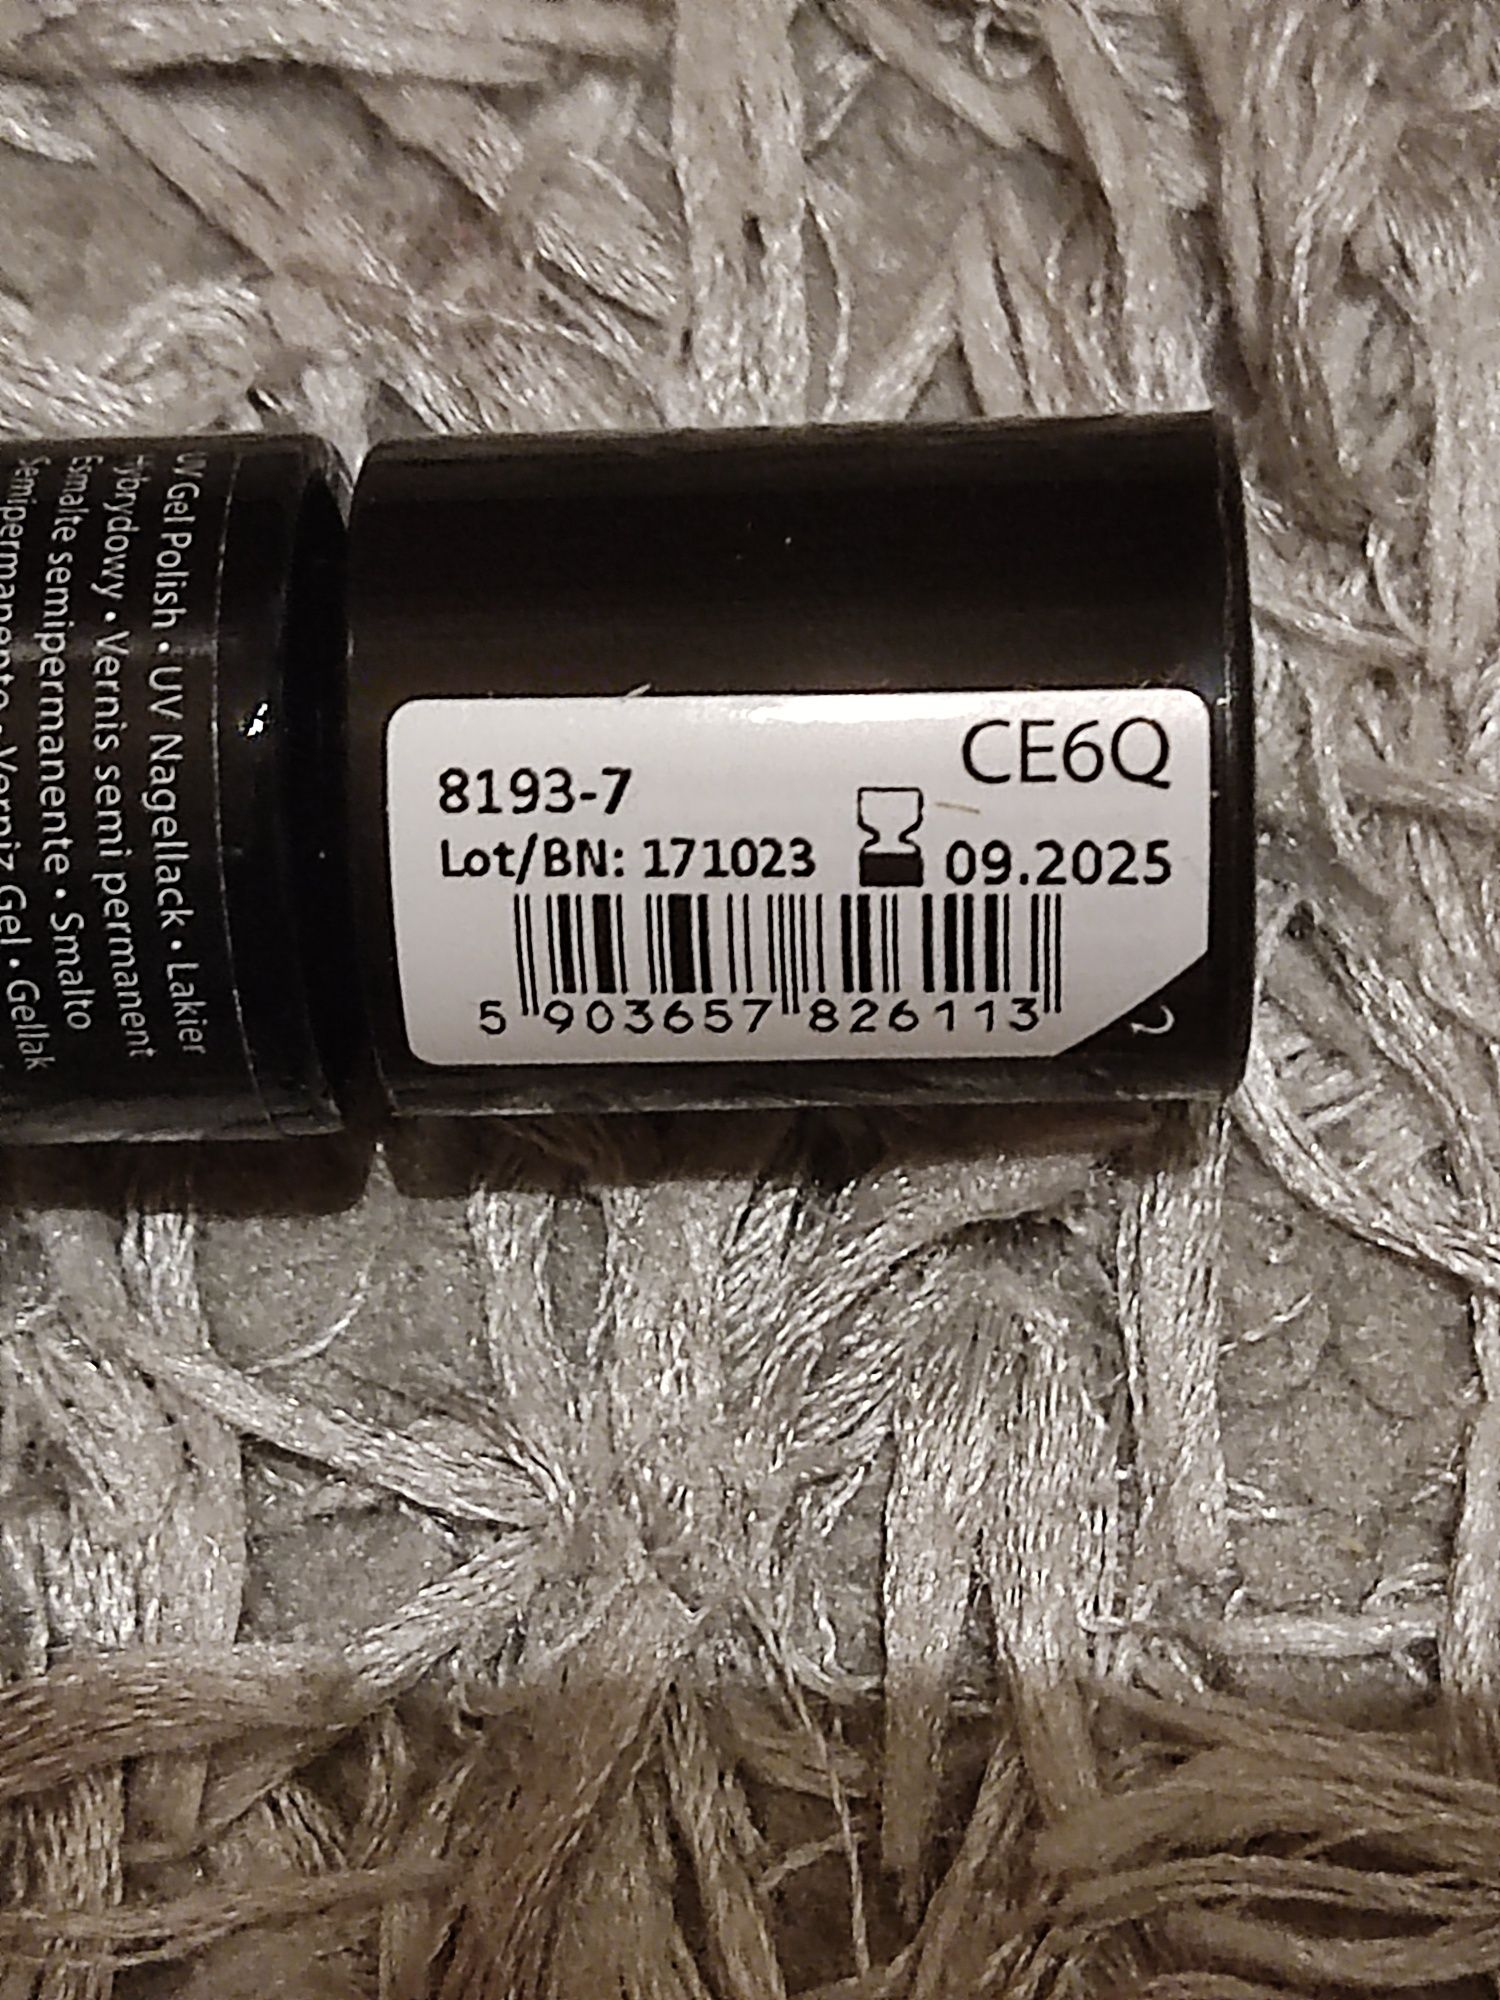 Nowy brokatowy lakier hybrydowy neonail find freedom 8193-7 mani